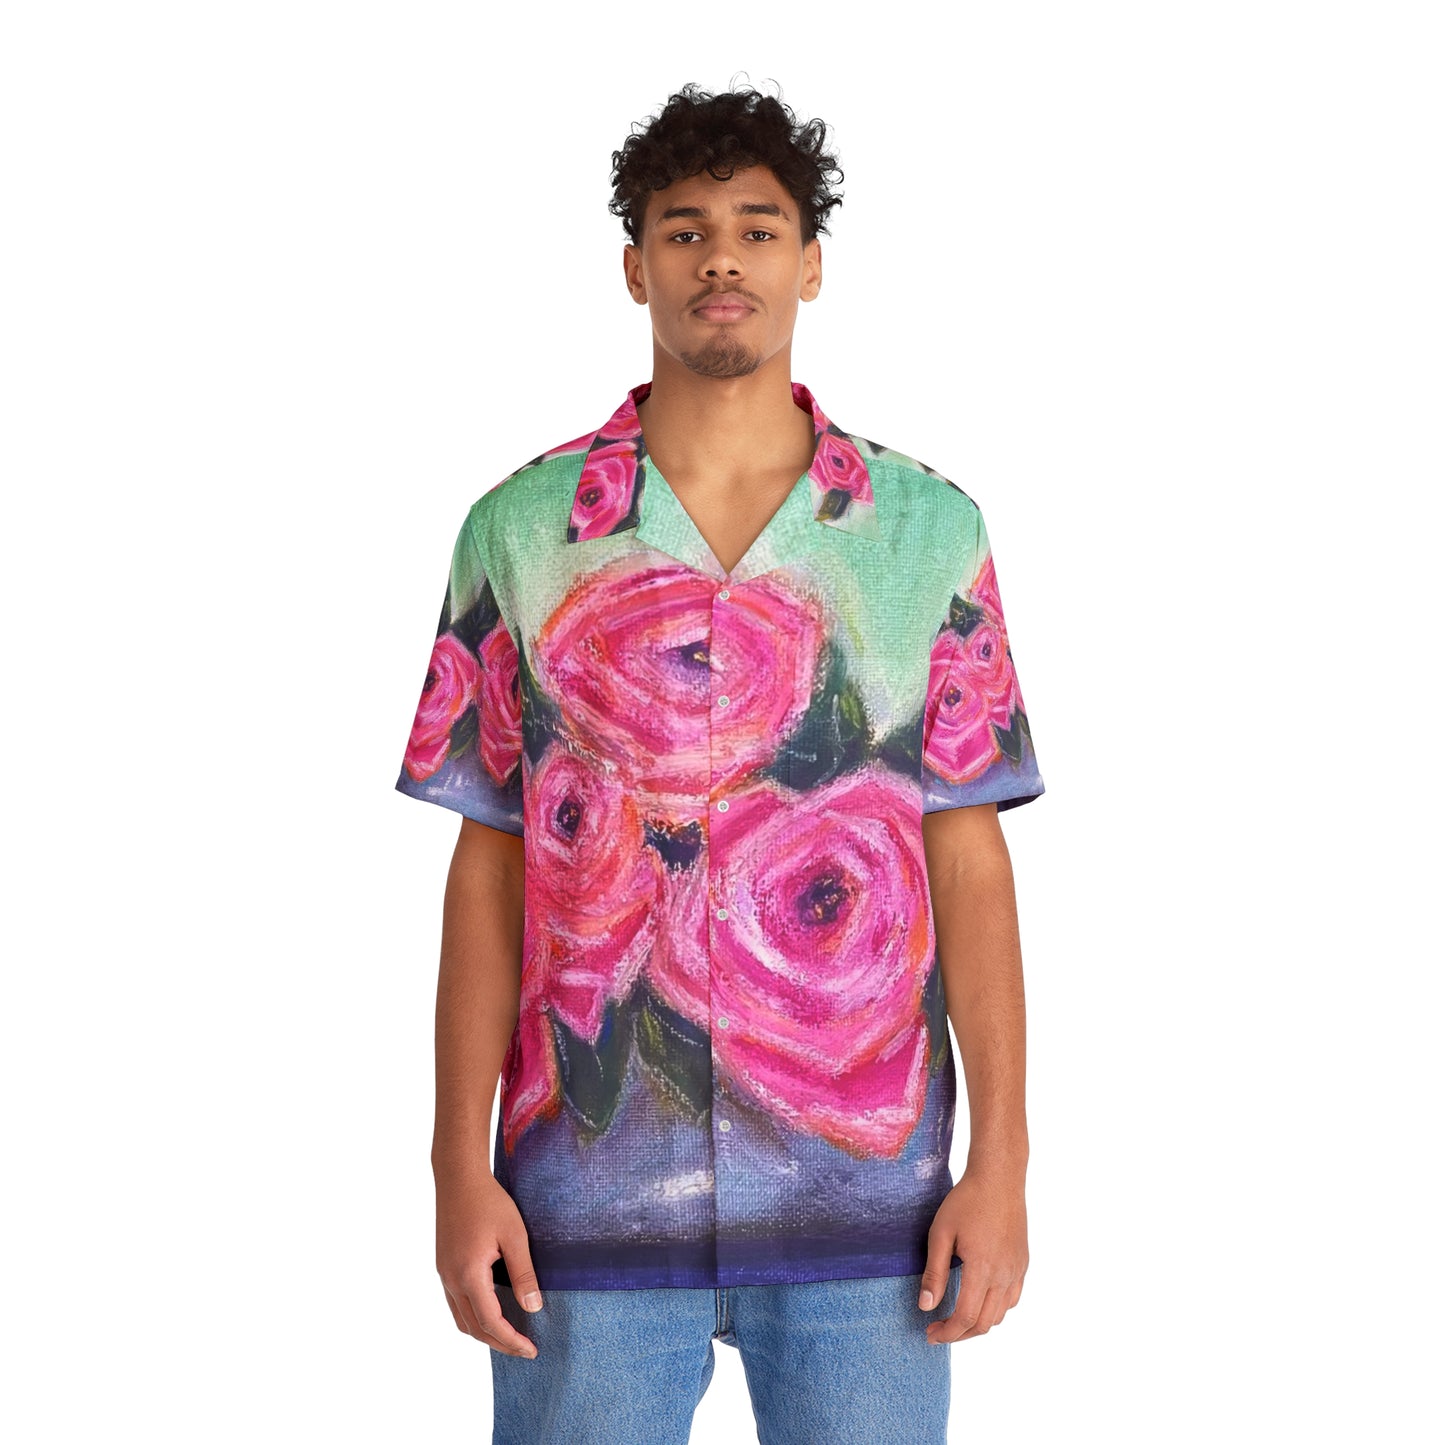 Tin Full of Roses Men's Hawaiian Shirt